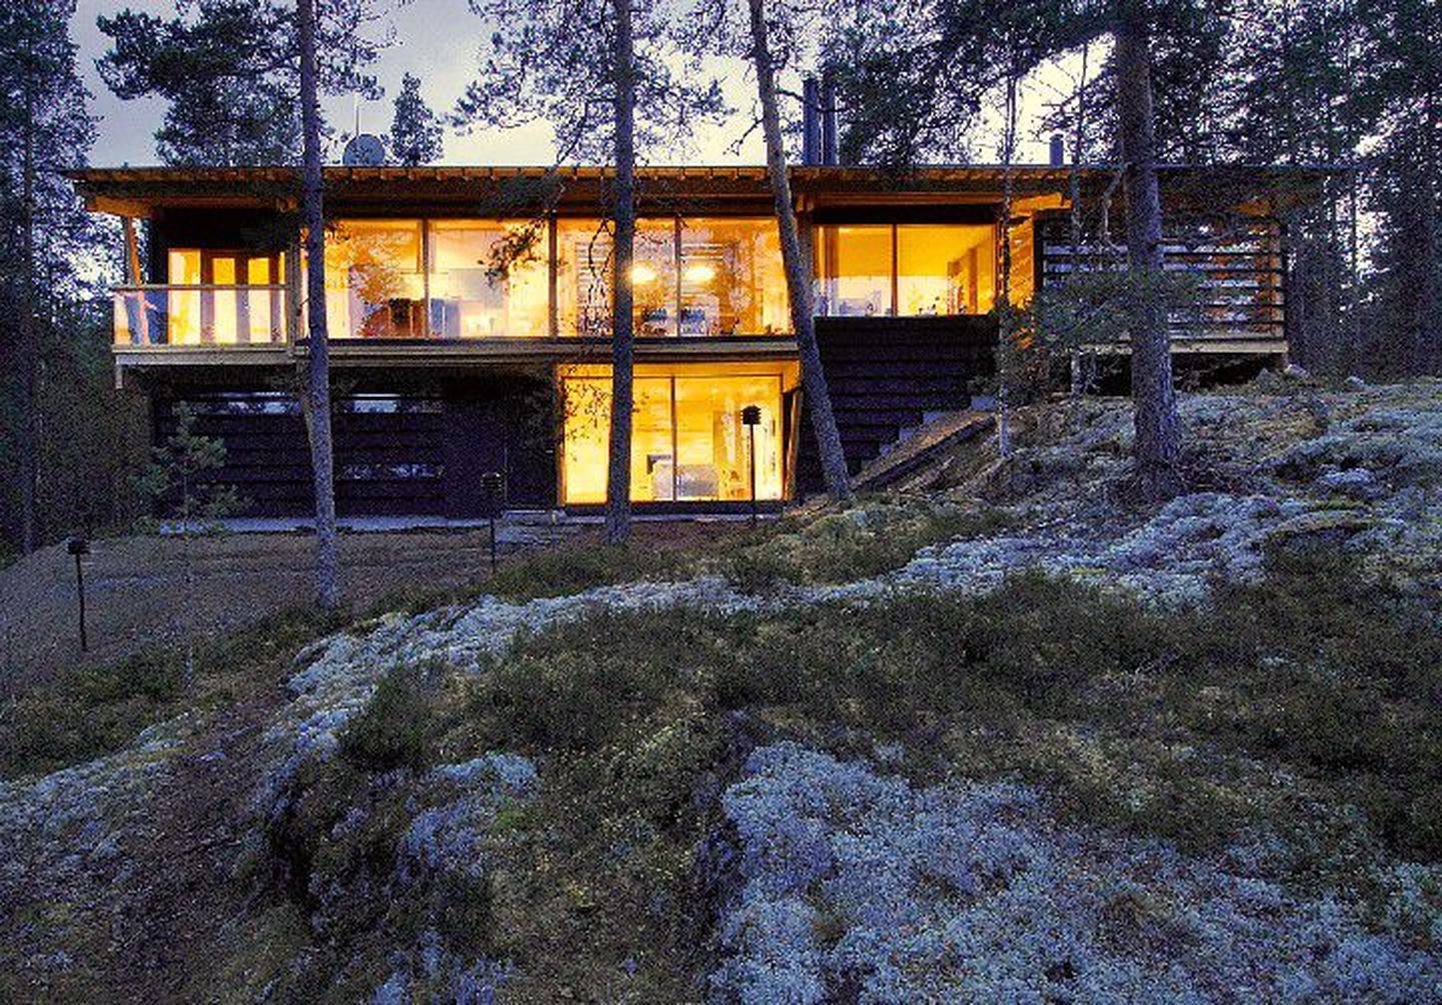 Suvila Kerimäel: Põhjamaade modernismist kantud puithoones on loodud mõnusad tingimused aasta ringi elamiseks.